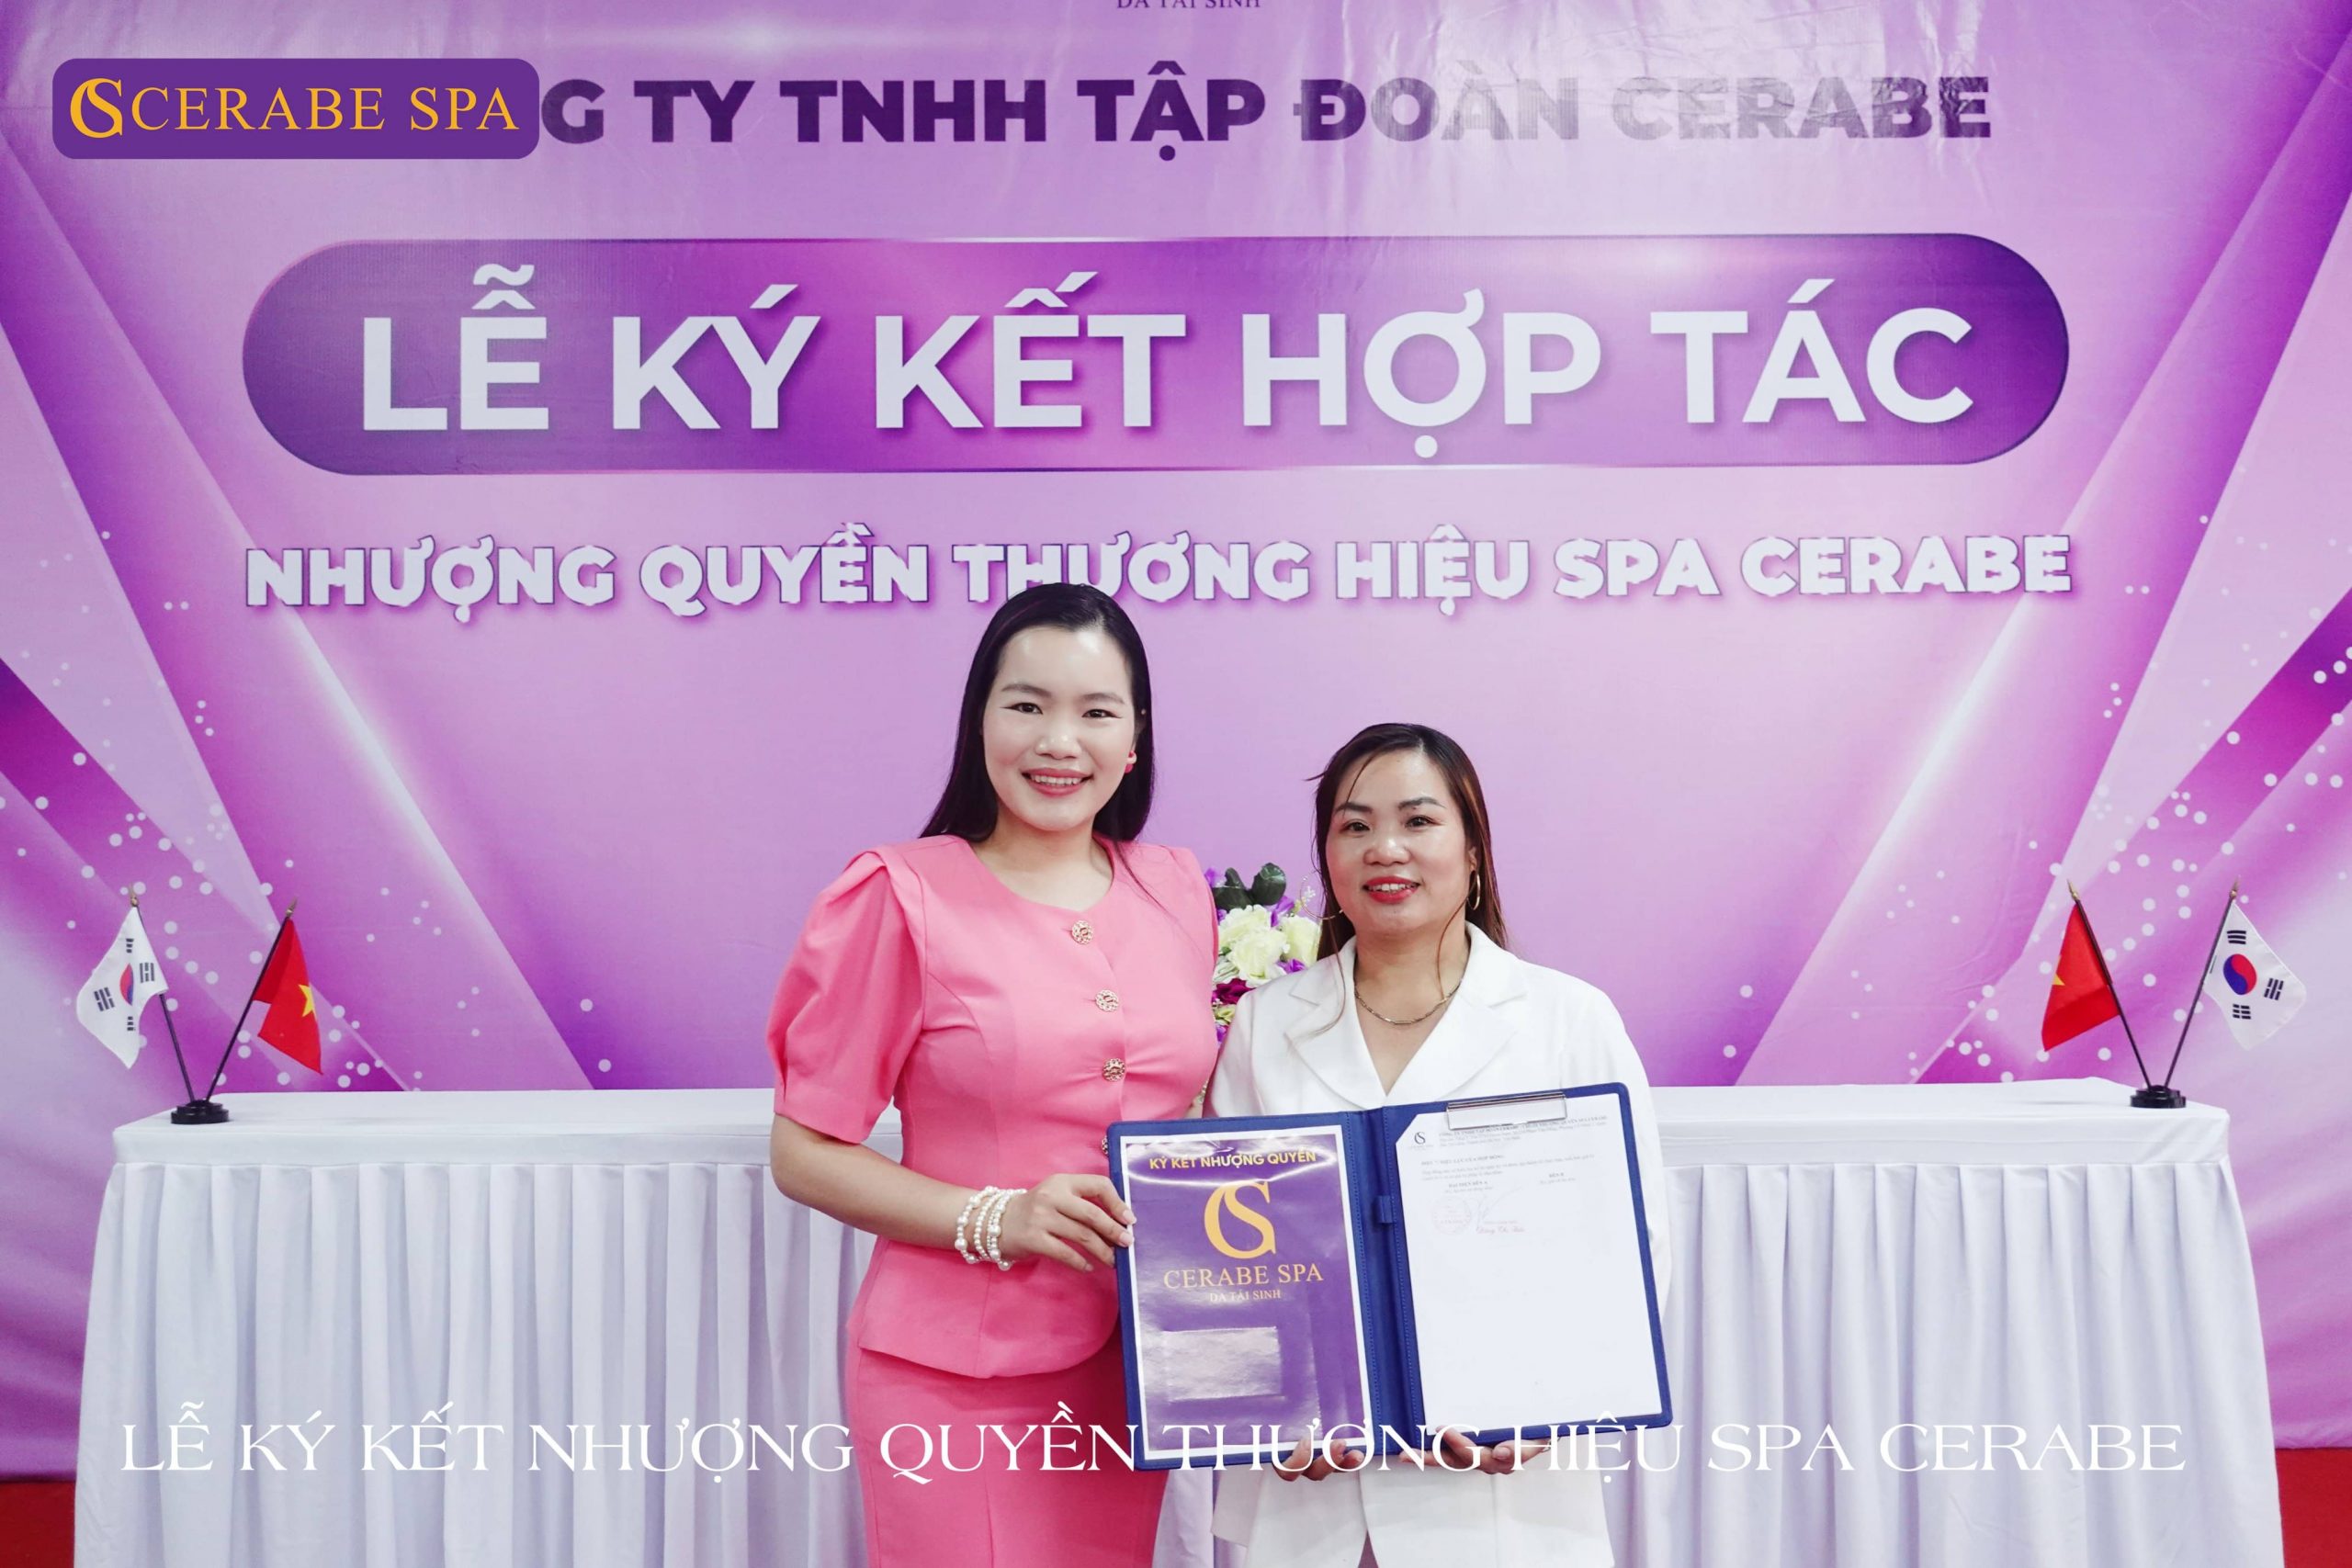 Chúc mừng chuyên gia Phạm Thị Thảo chính thức trở thành tân giám đốc - Chủ 1 cơ sở Spa Cerabe